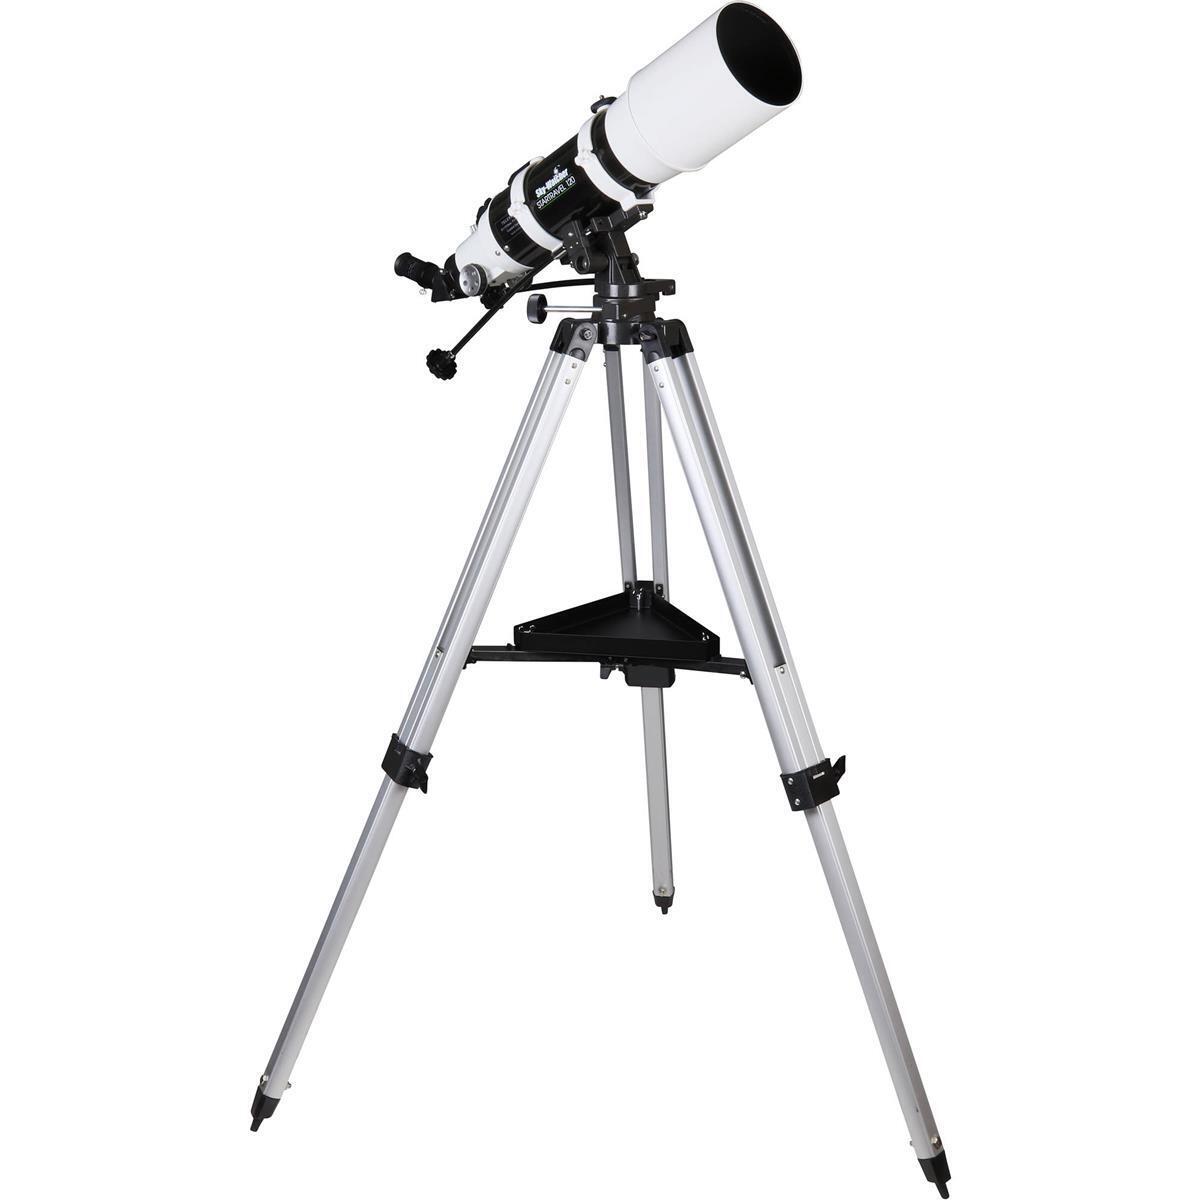 Sky-Watcher StarTravel 120mm f/5 Refractor Telescope with Manual Alt-Az Mount